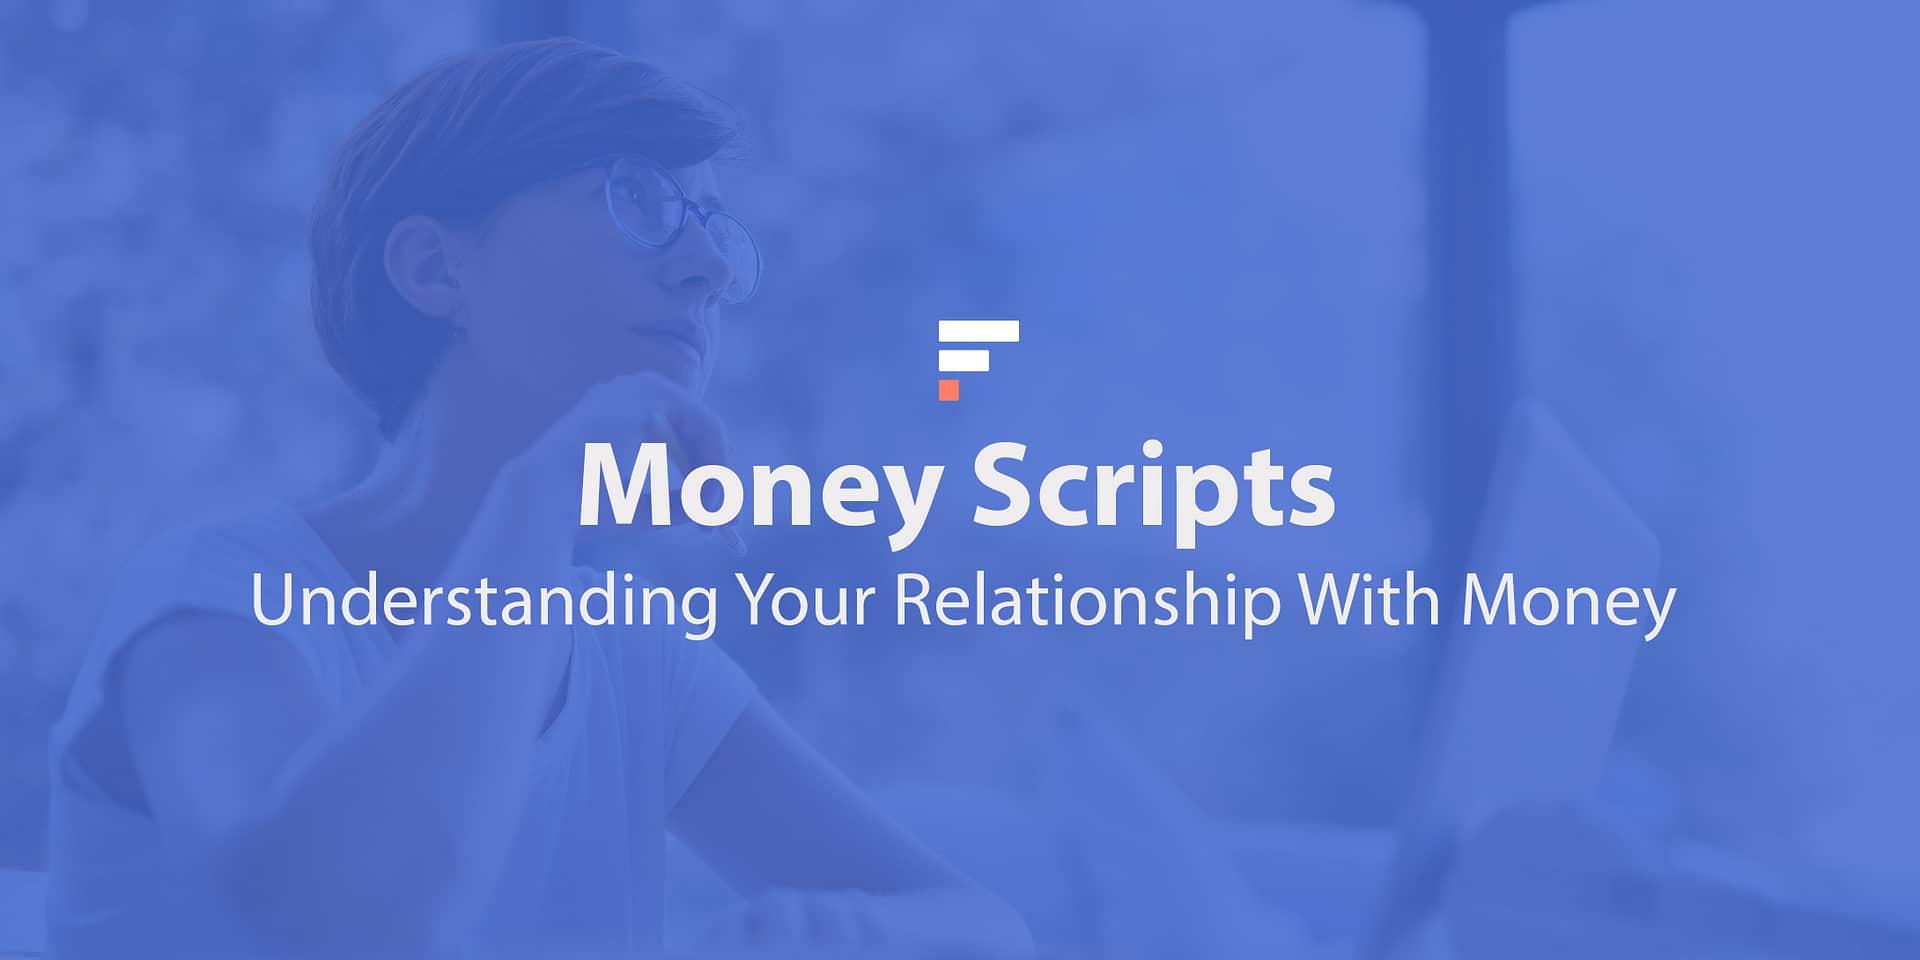 Money Scripts: Understanding Your Relationship With Money